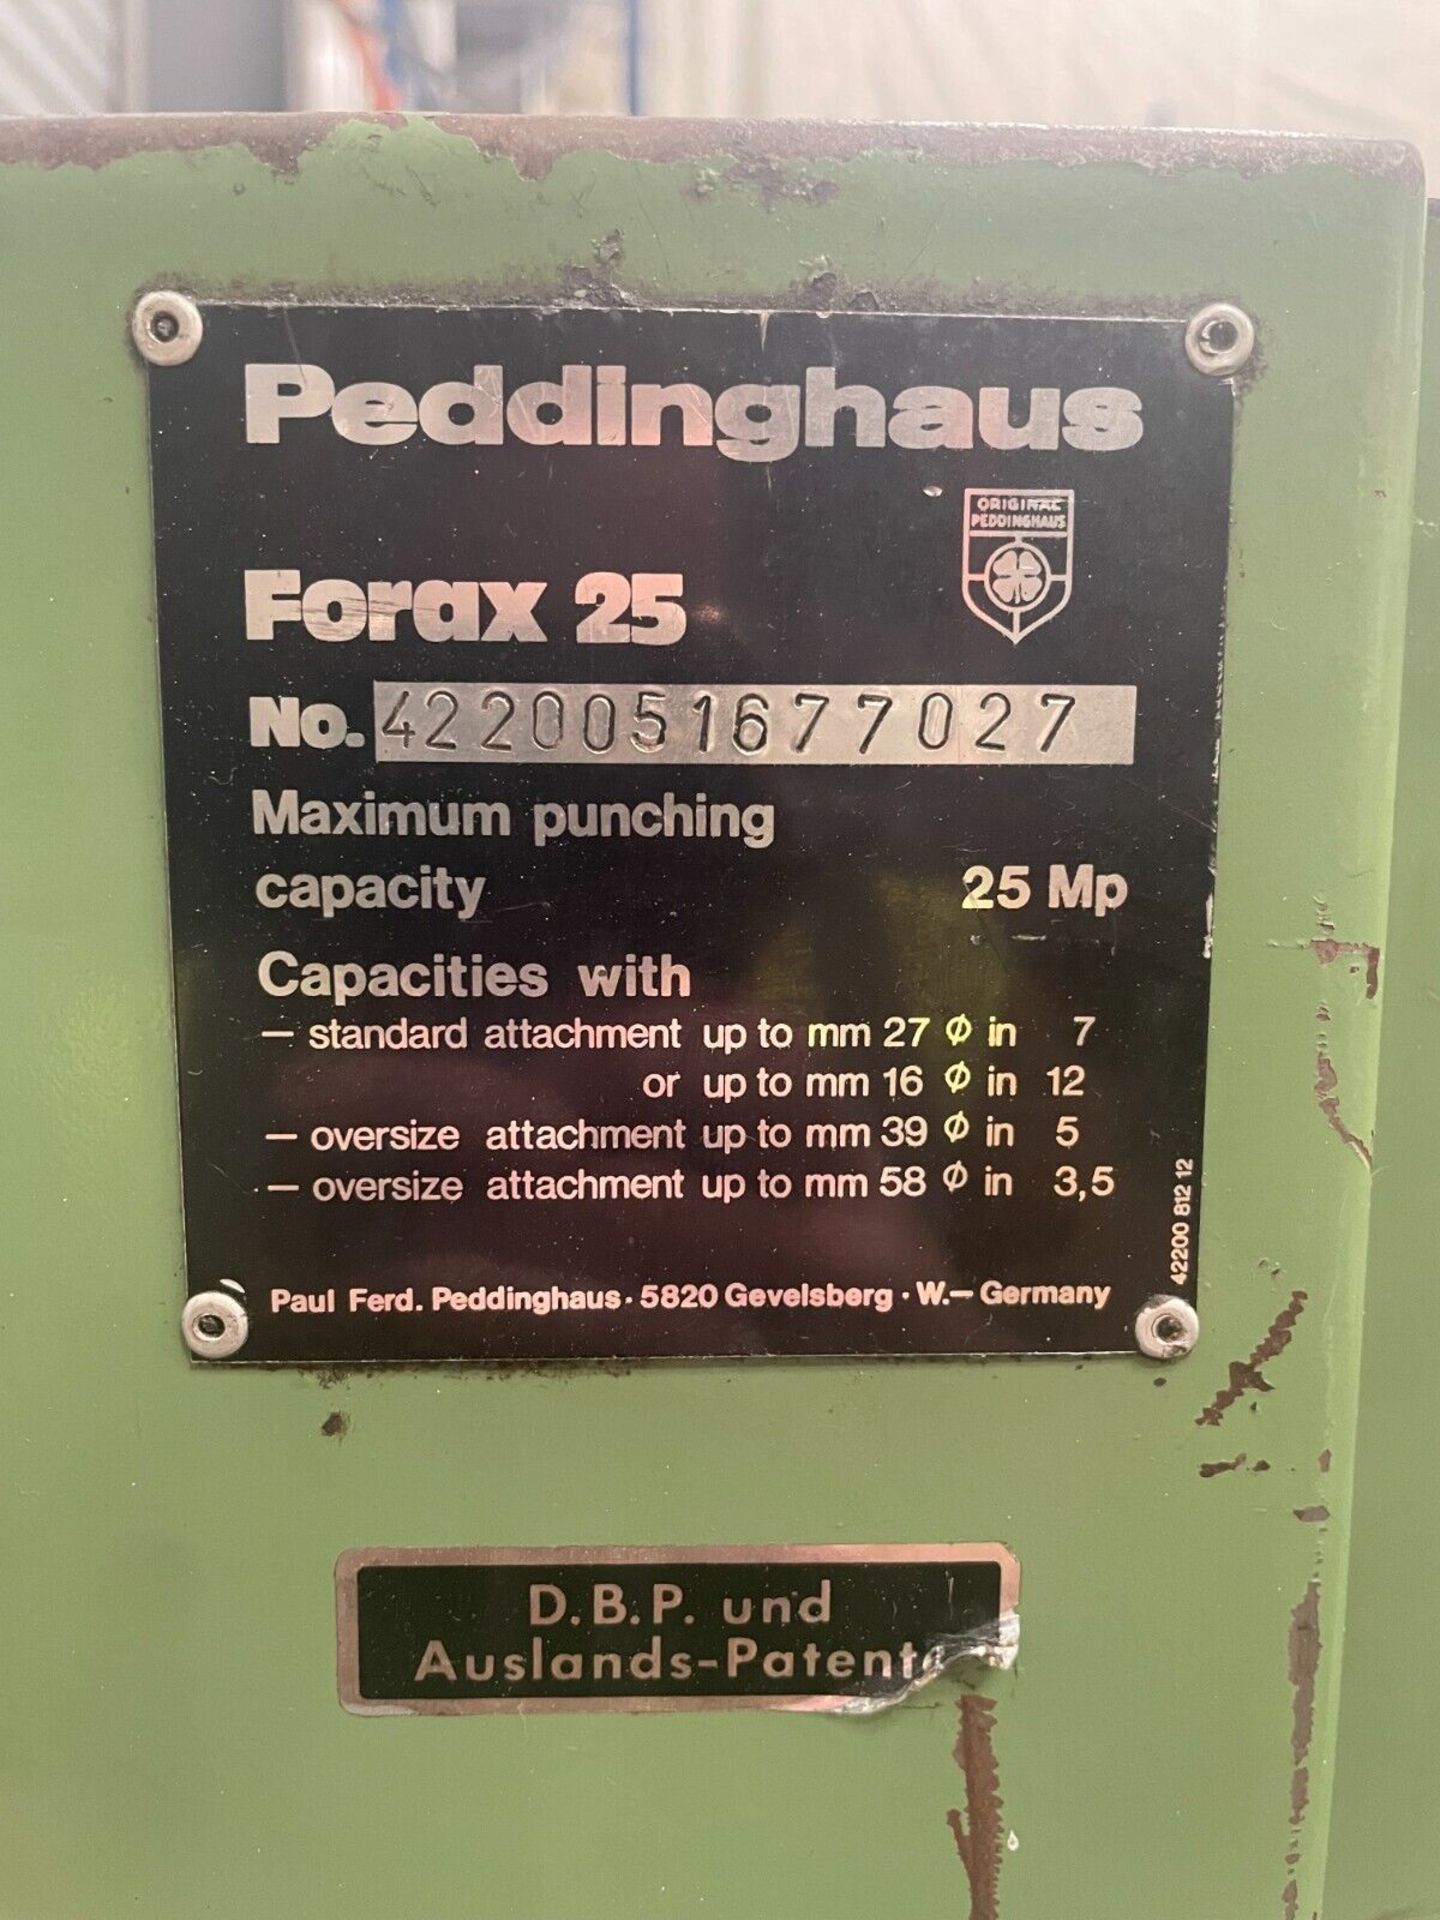 Peddinghaus Forax 25 Punch Press Punching Machine 25 Ton - Image 4 of 6